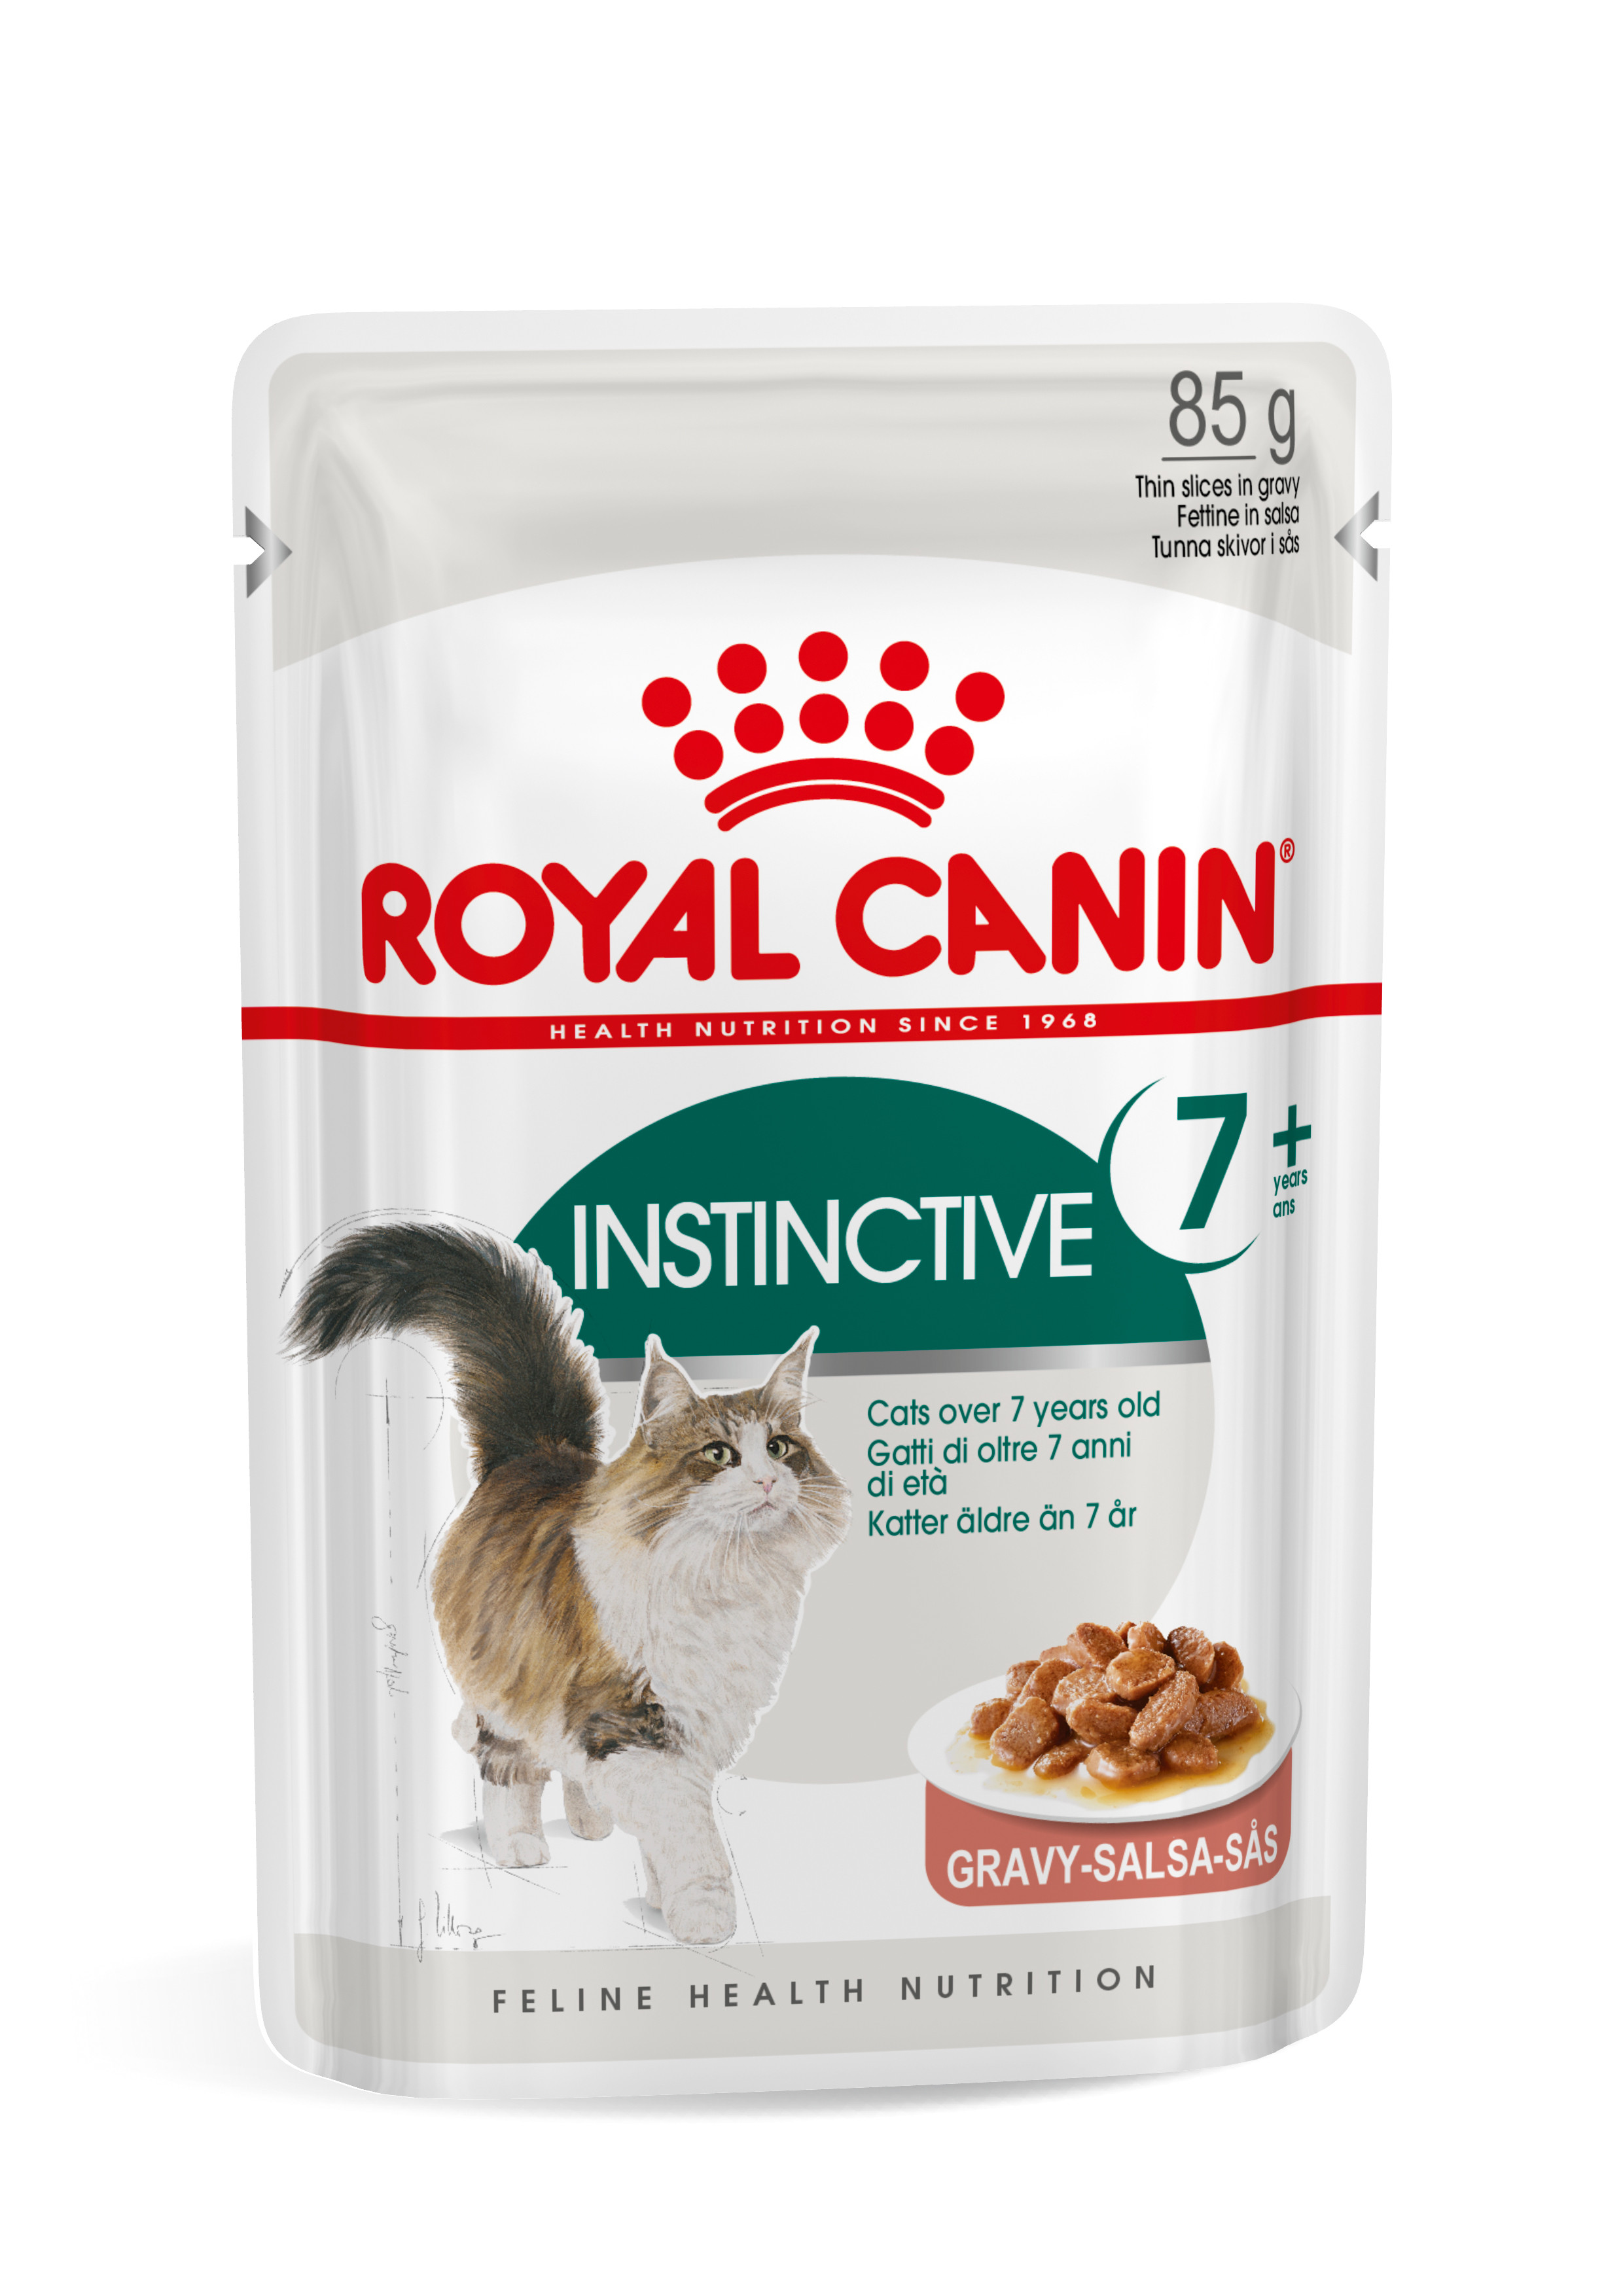 Royal Canin Instinctive 7+ kattfoder i sås (85 g)